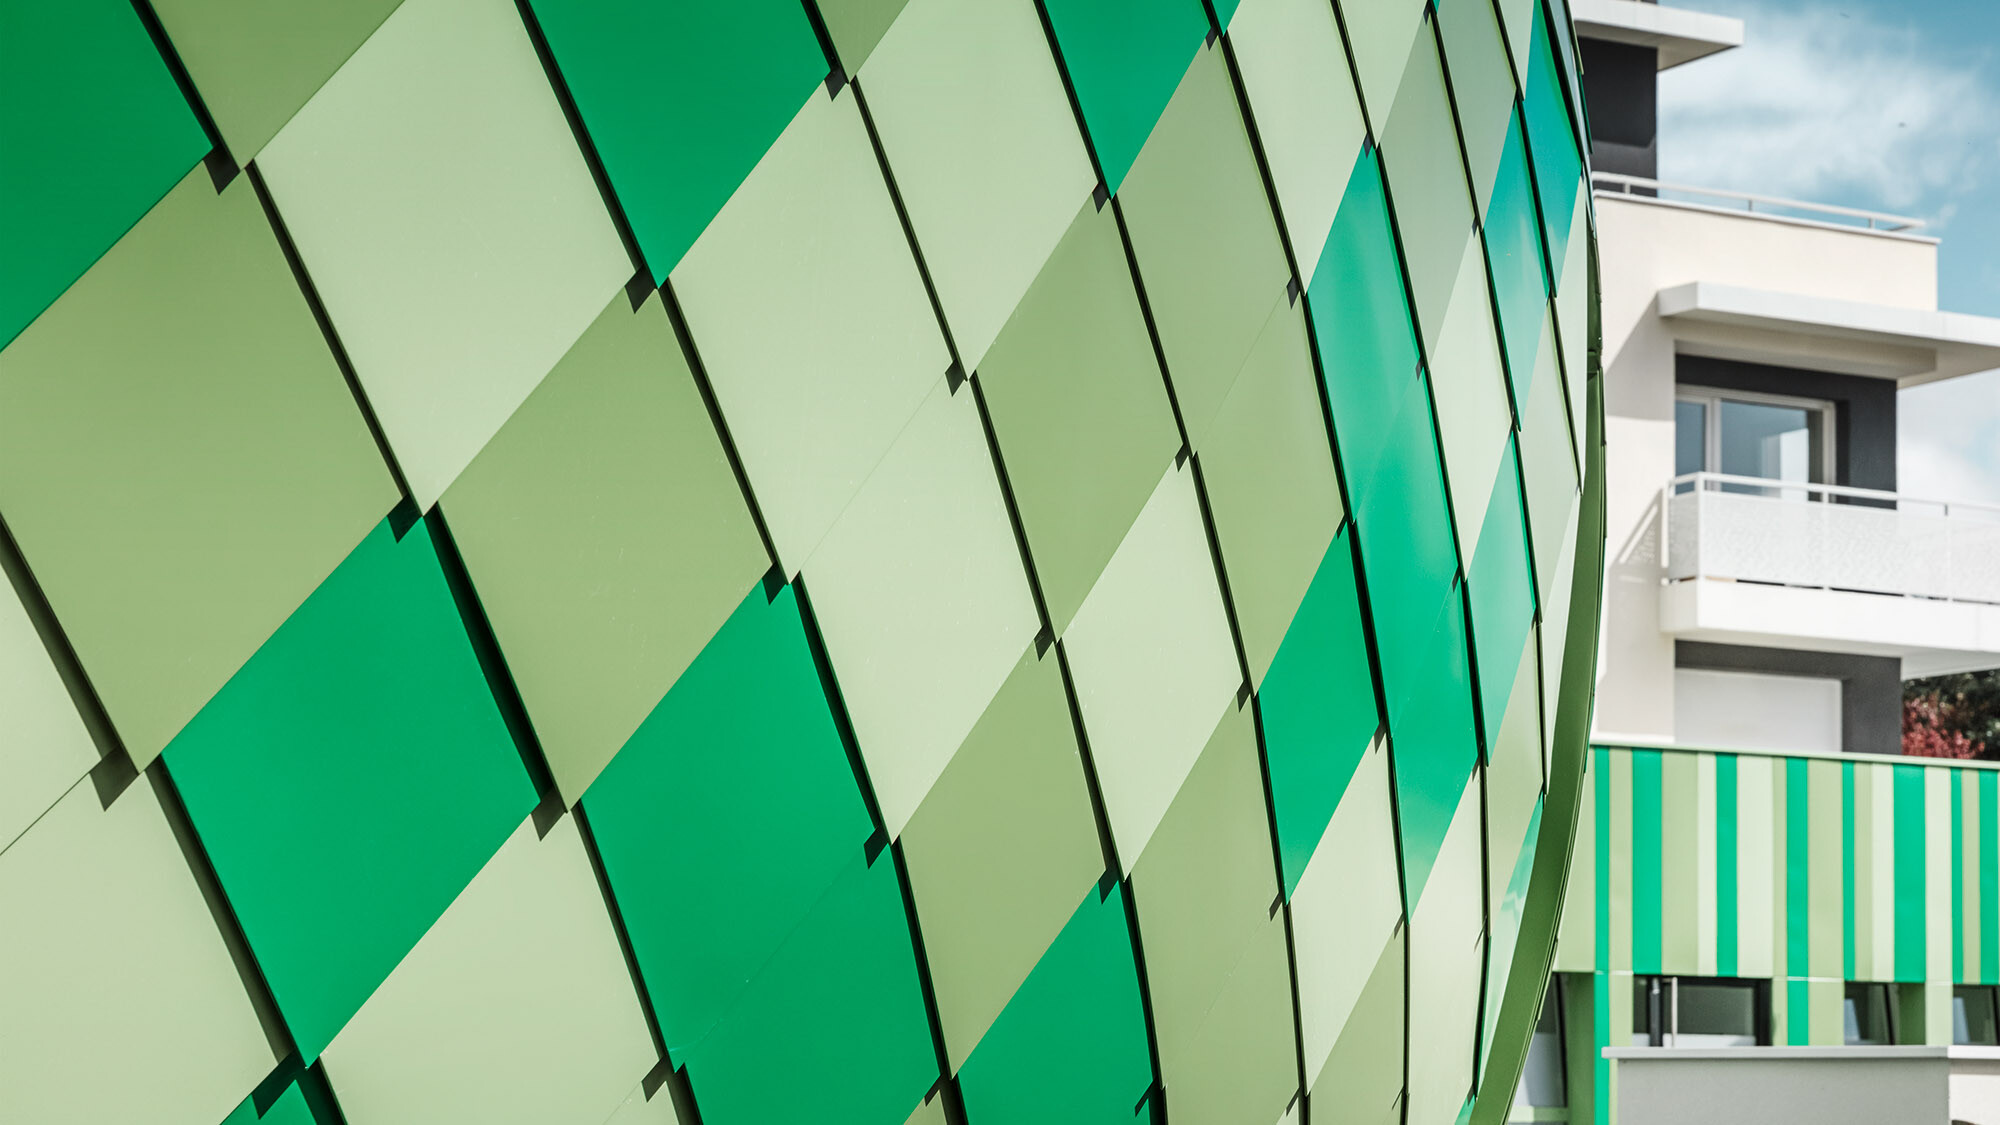 Boční detailní pohled na hliníkový plášť vyrobený z fasádních šablon ve speciálních barvách na zakázku - šedozelená, rezedová zelená a normovaná mátově zelená